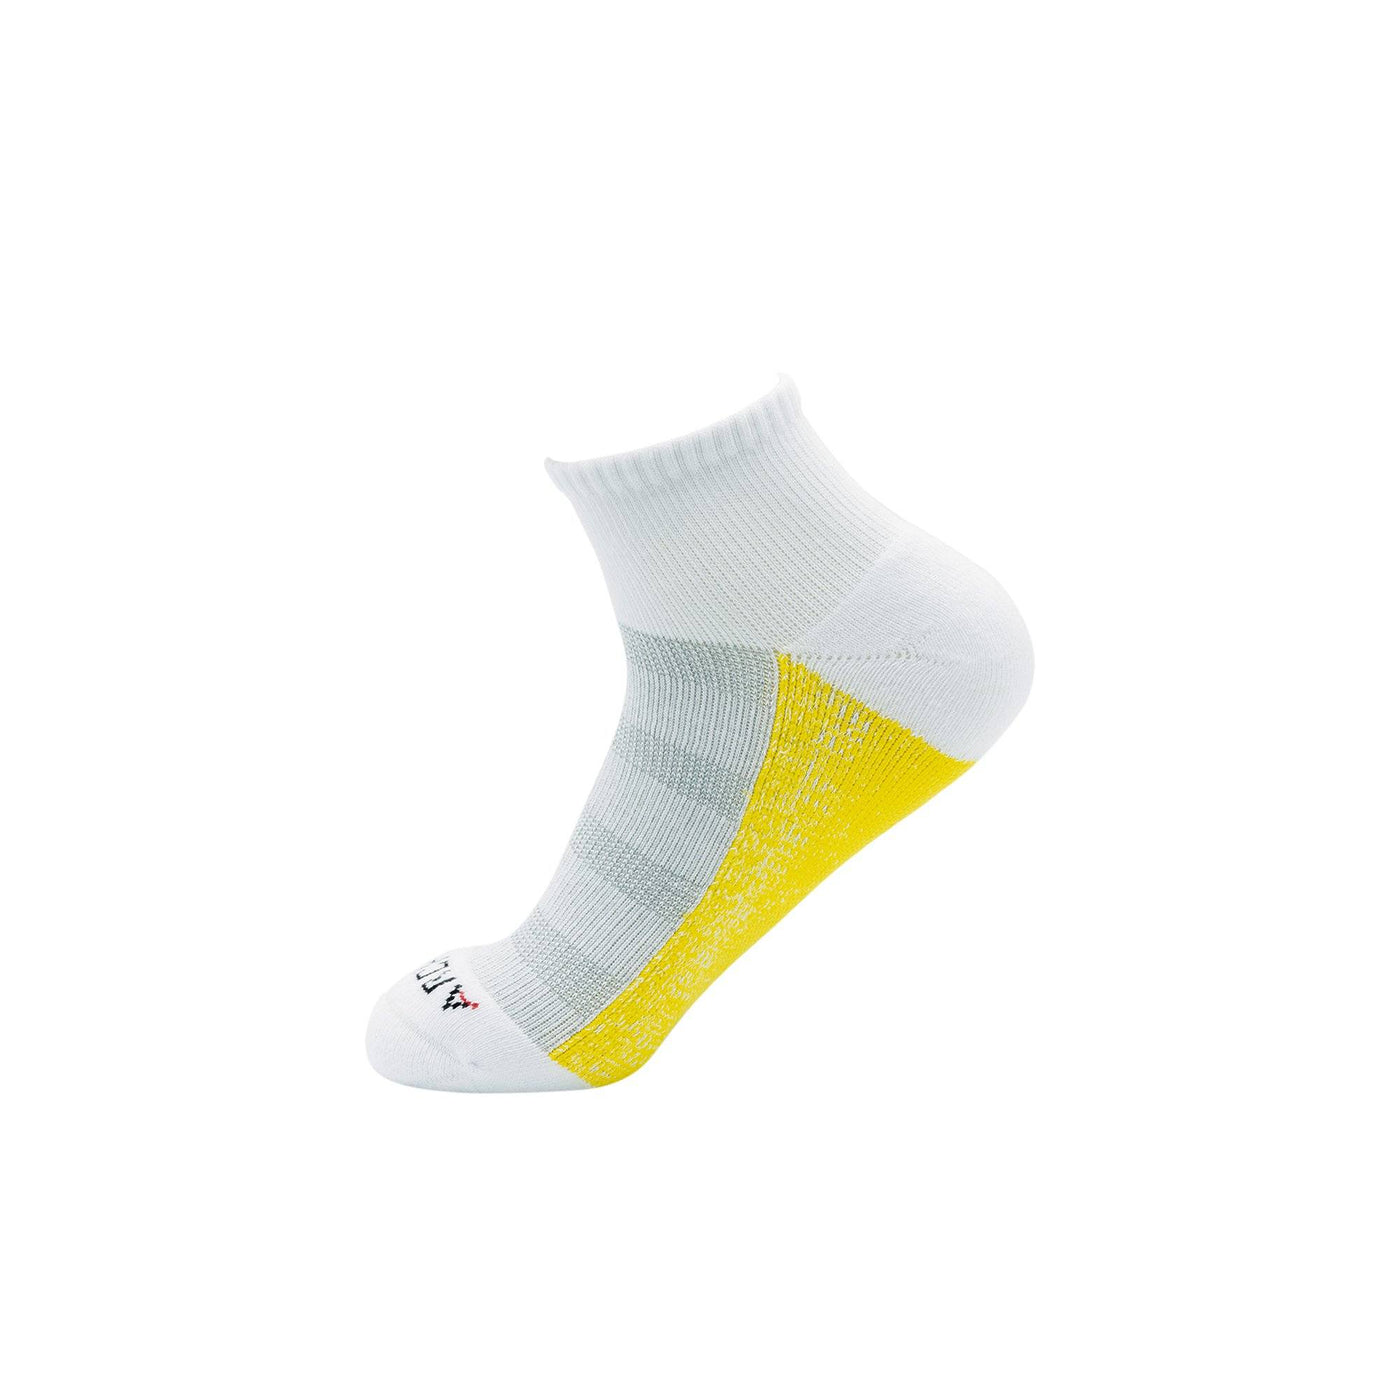 ArchTek® Quarter Socks (6 Pack White) athletic socks ArchTek 